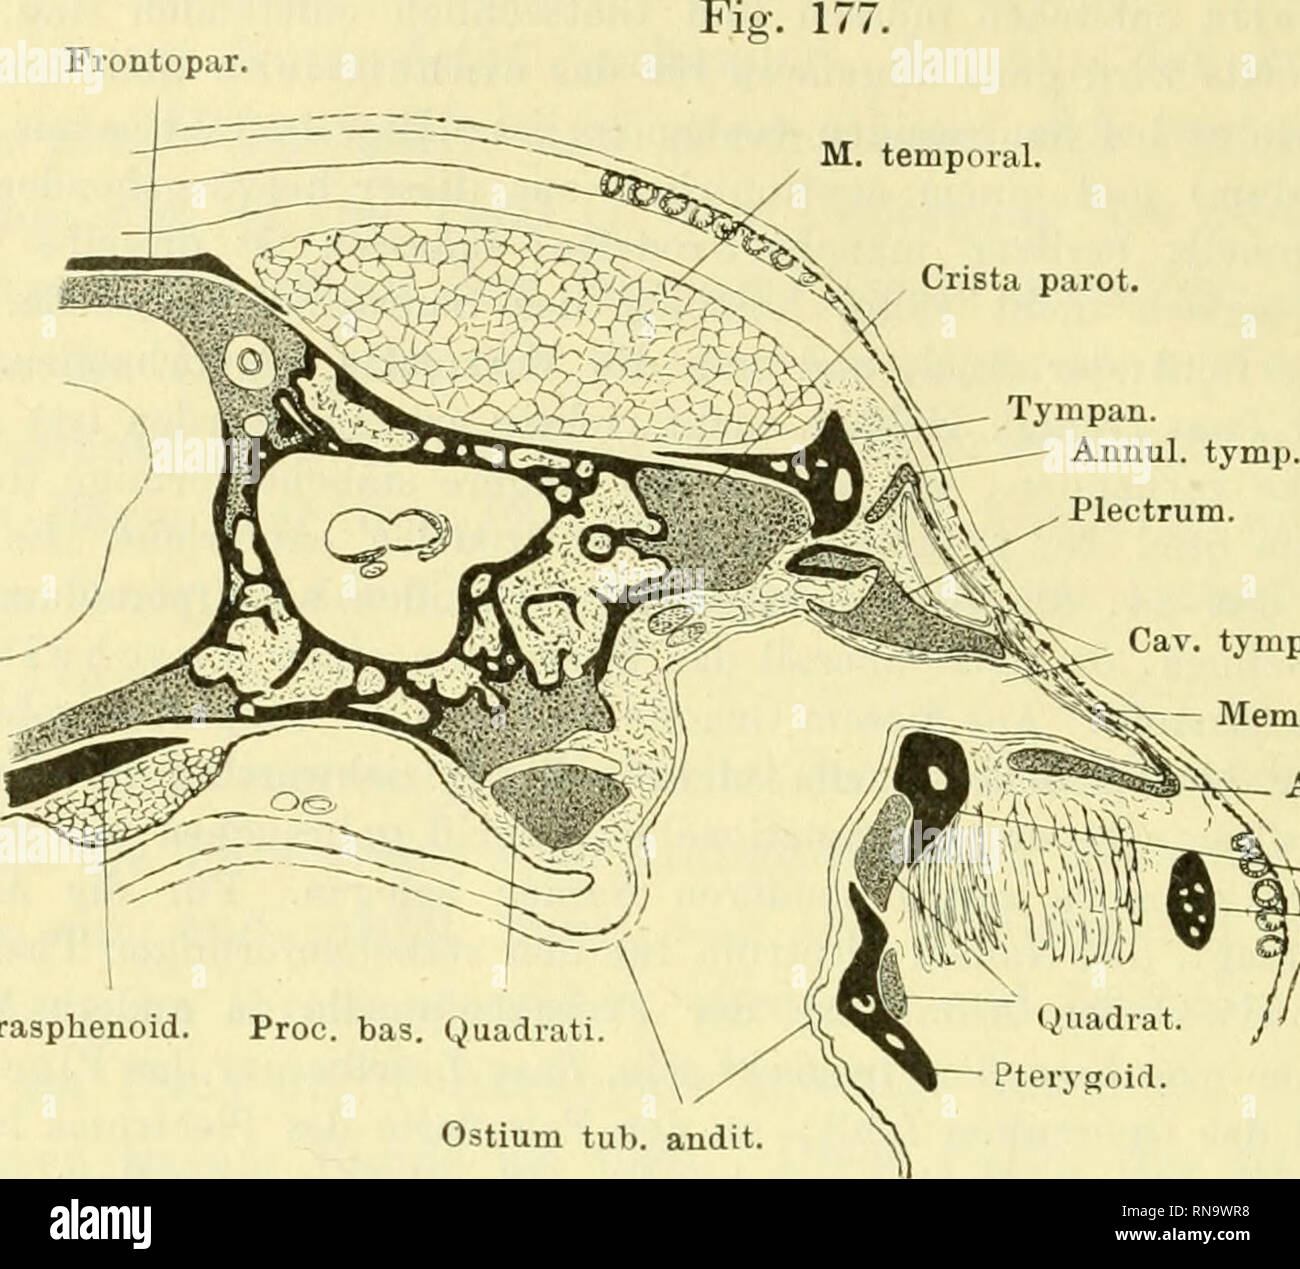 . Anatomie des Frosches. Frogs; Amphibians. 742 PaukenhöHe. ren Paukenhöhlenabschnitt in den inneren führt. Diese innere Oeff- nung besitzt aber nicht die rundliche Form, die sie am isolirten Annuliis tympanicus zeigt, sondern wird von vorn her sehr beträcht- Frontopar. Cav. tymp. Membi'. tymp. fe^'-y- Annul. tymp. g^ Tympan. J,'Ji/J Vlj^*^&quot;^dr.-max. .-at. // Parasphenoid. Proc. bas. (juadiati Ostium tub. andit. Schnitt durch die Paukenhöhle von Kana eaculenta. Vergr. 4 mal. Fi?. 178. Plica plectri Cav. tymp. M. depr. mand.. Please note that these images are extracted from scanned page i Stock Photo